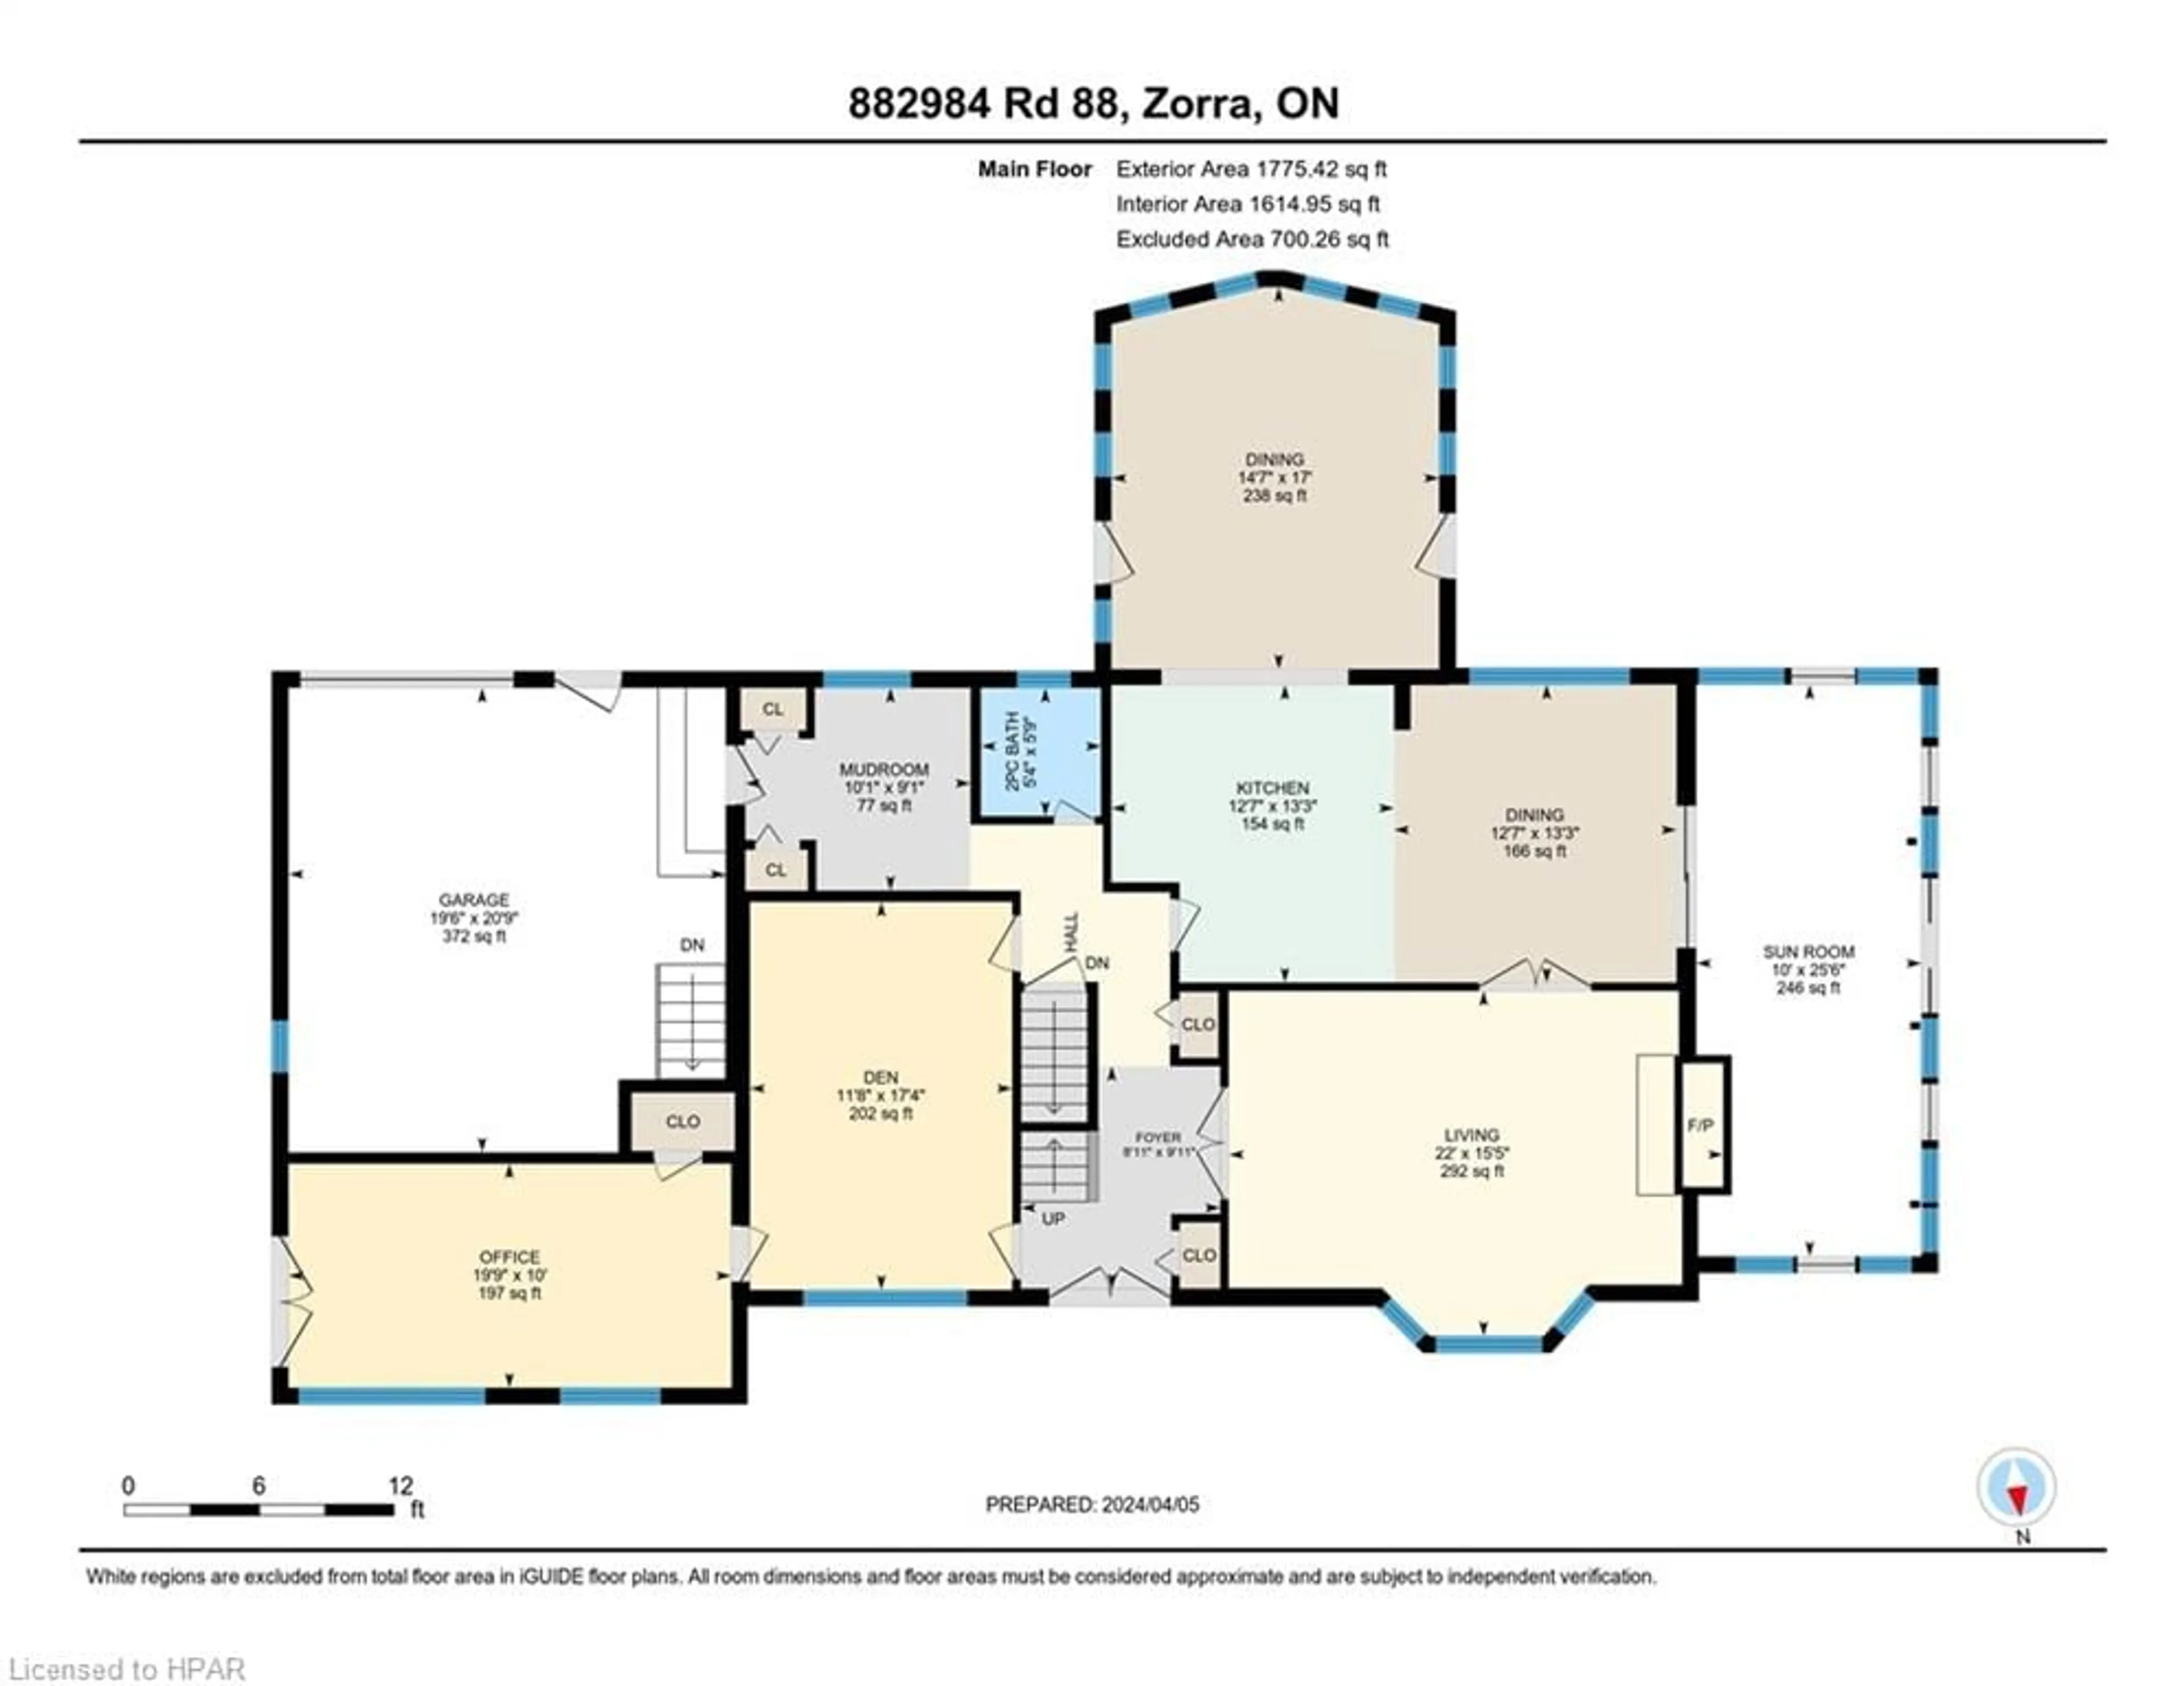 Floor plan for 882984 Rd 88, Zorra Ontario N0M 2M0